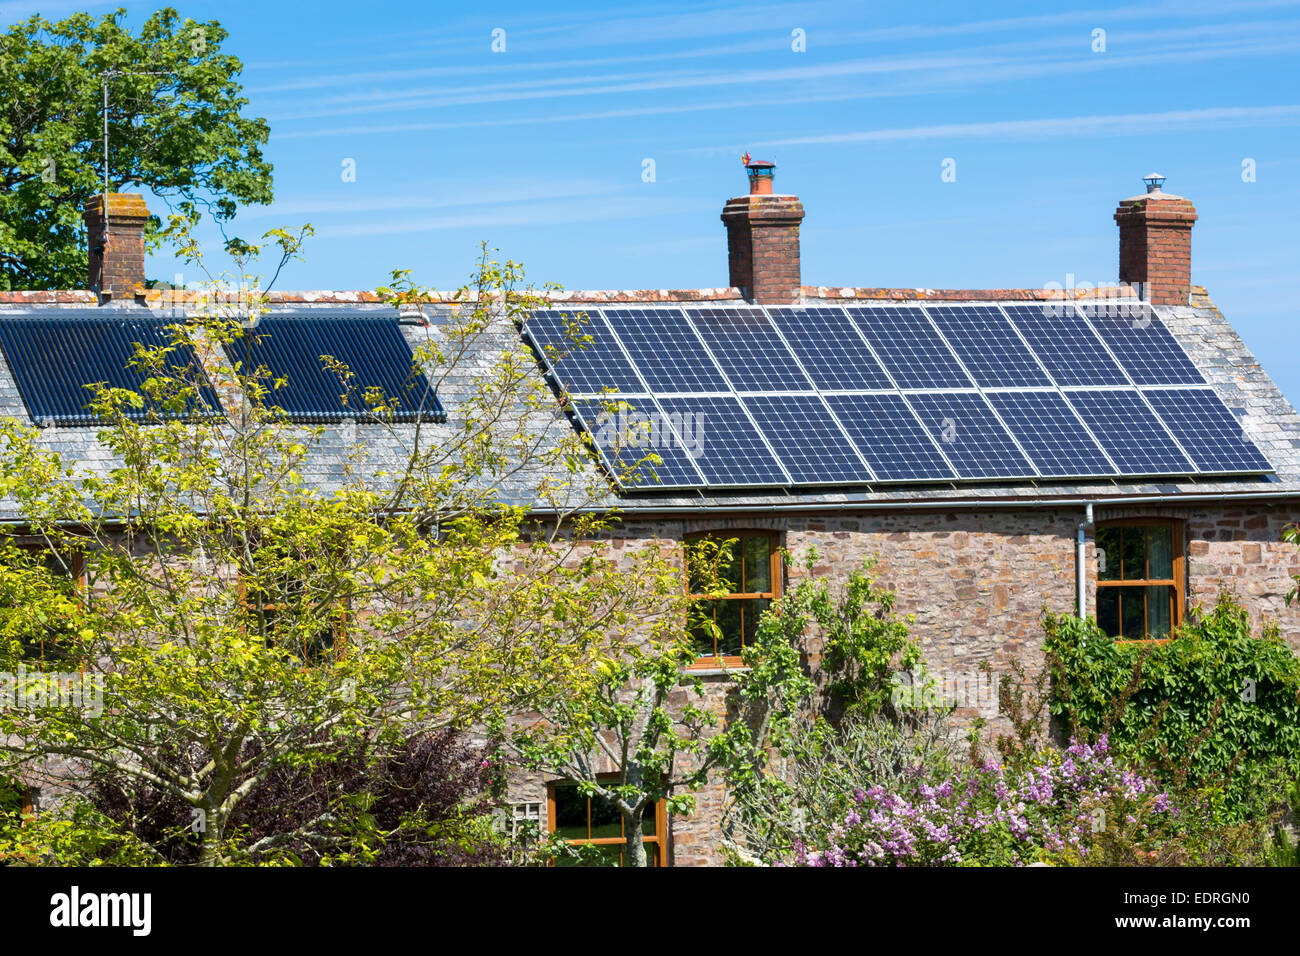 Paneles solares en la azotea y intercambiador de calor para el agua caliente en una propiedad de época en Occidente Tosberry, Devon, en el sur de Inglaterra, Reino Unido. Foto de stock